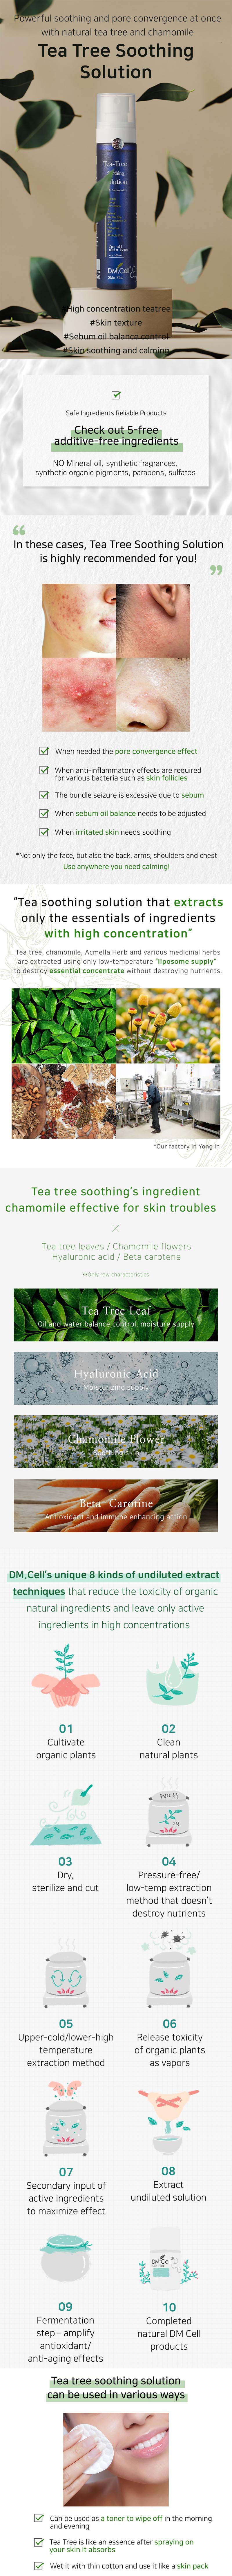 tea_tree_soothing_solution.jpg